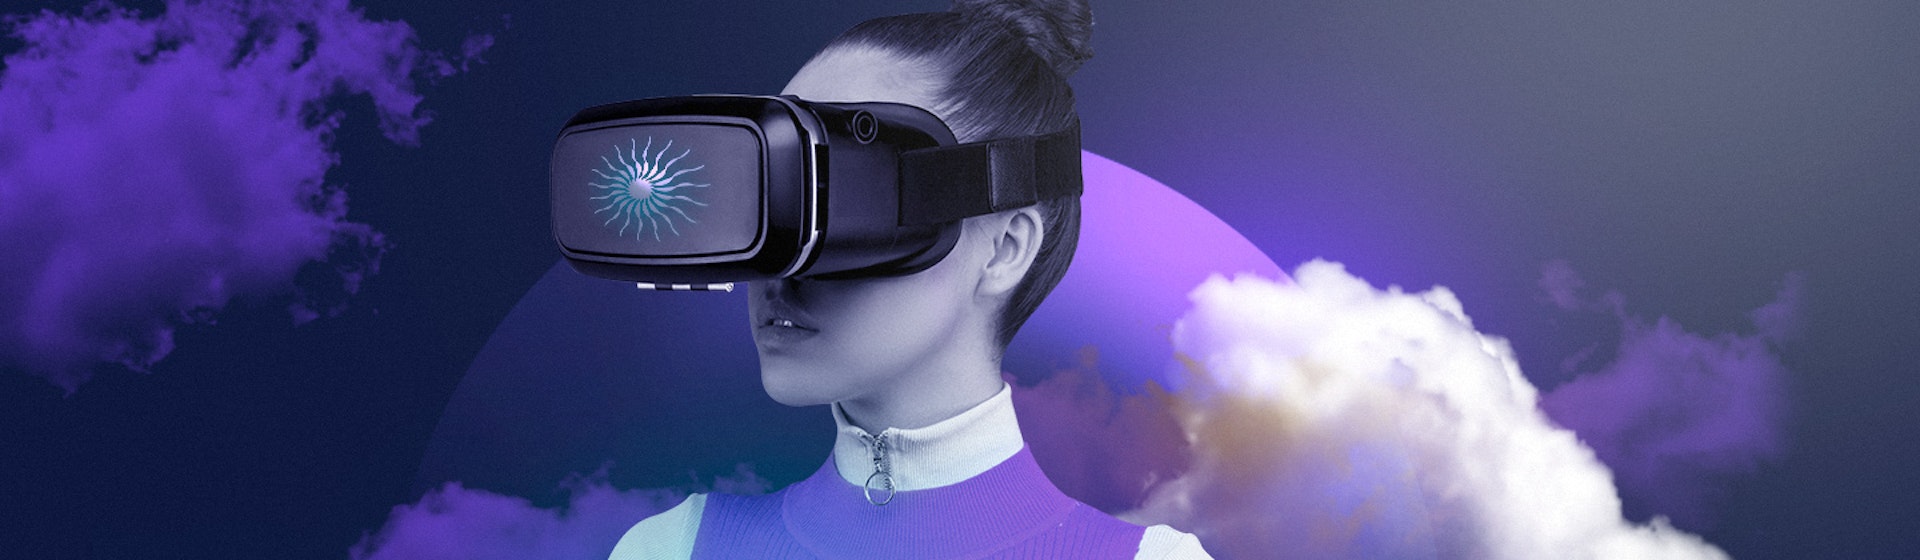 ¿Cómo funcionan los lentes de realidad virtual? El entretenimiento futurista de la actualidad